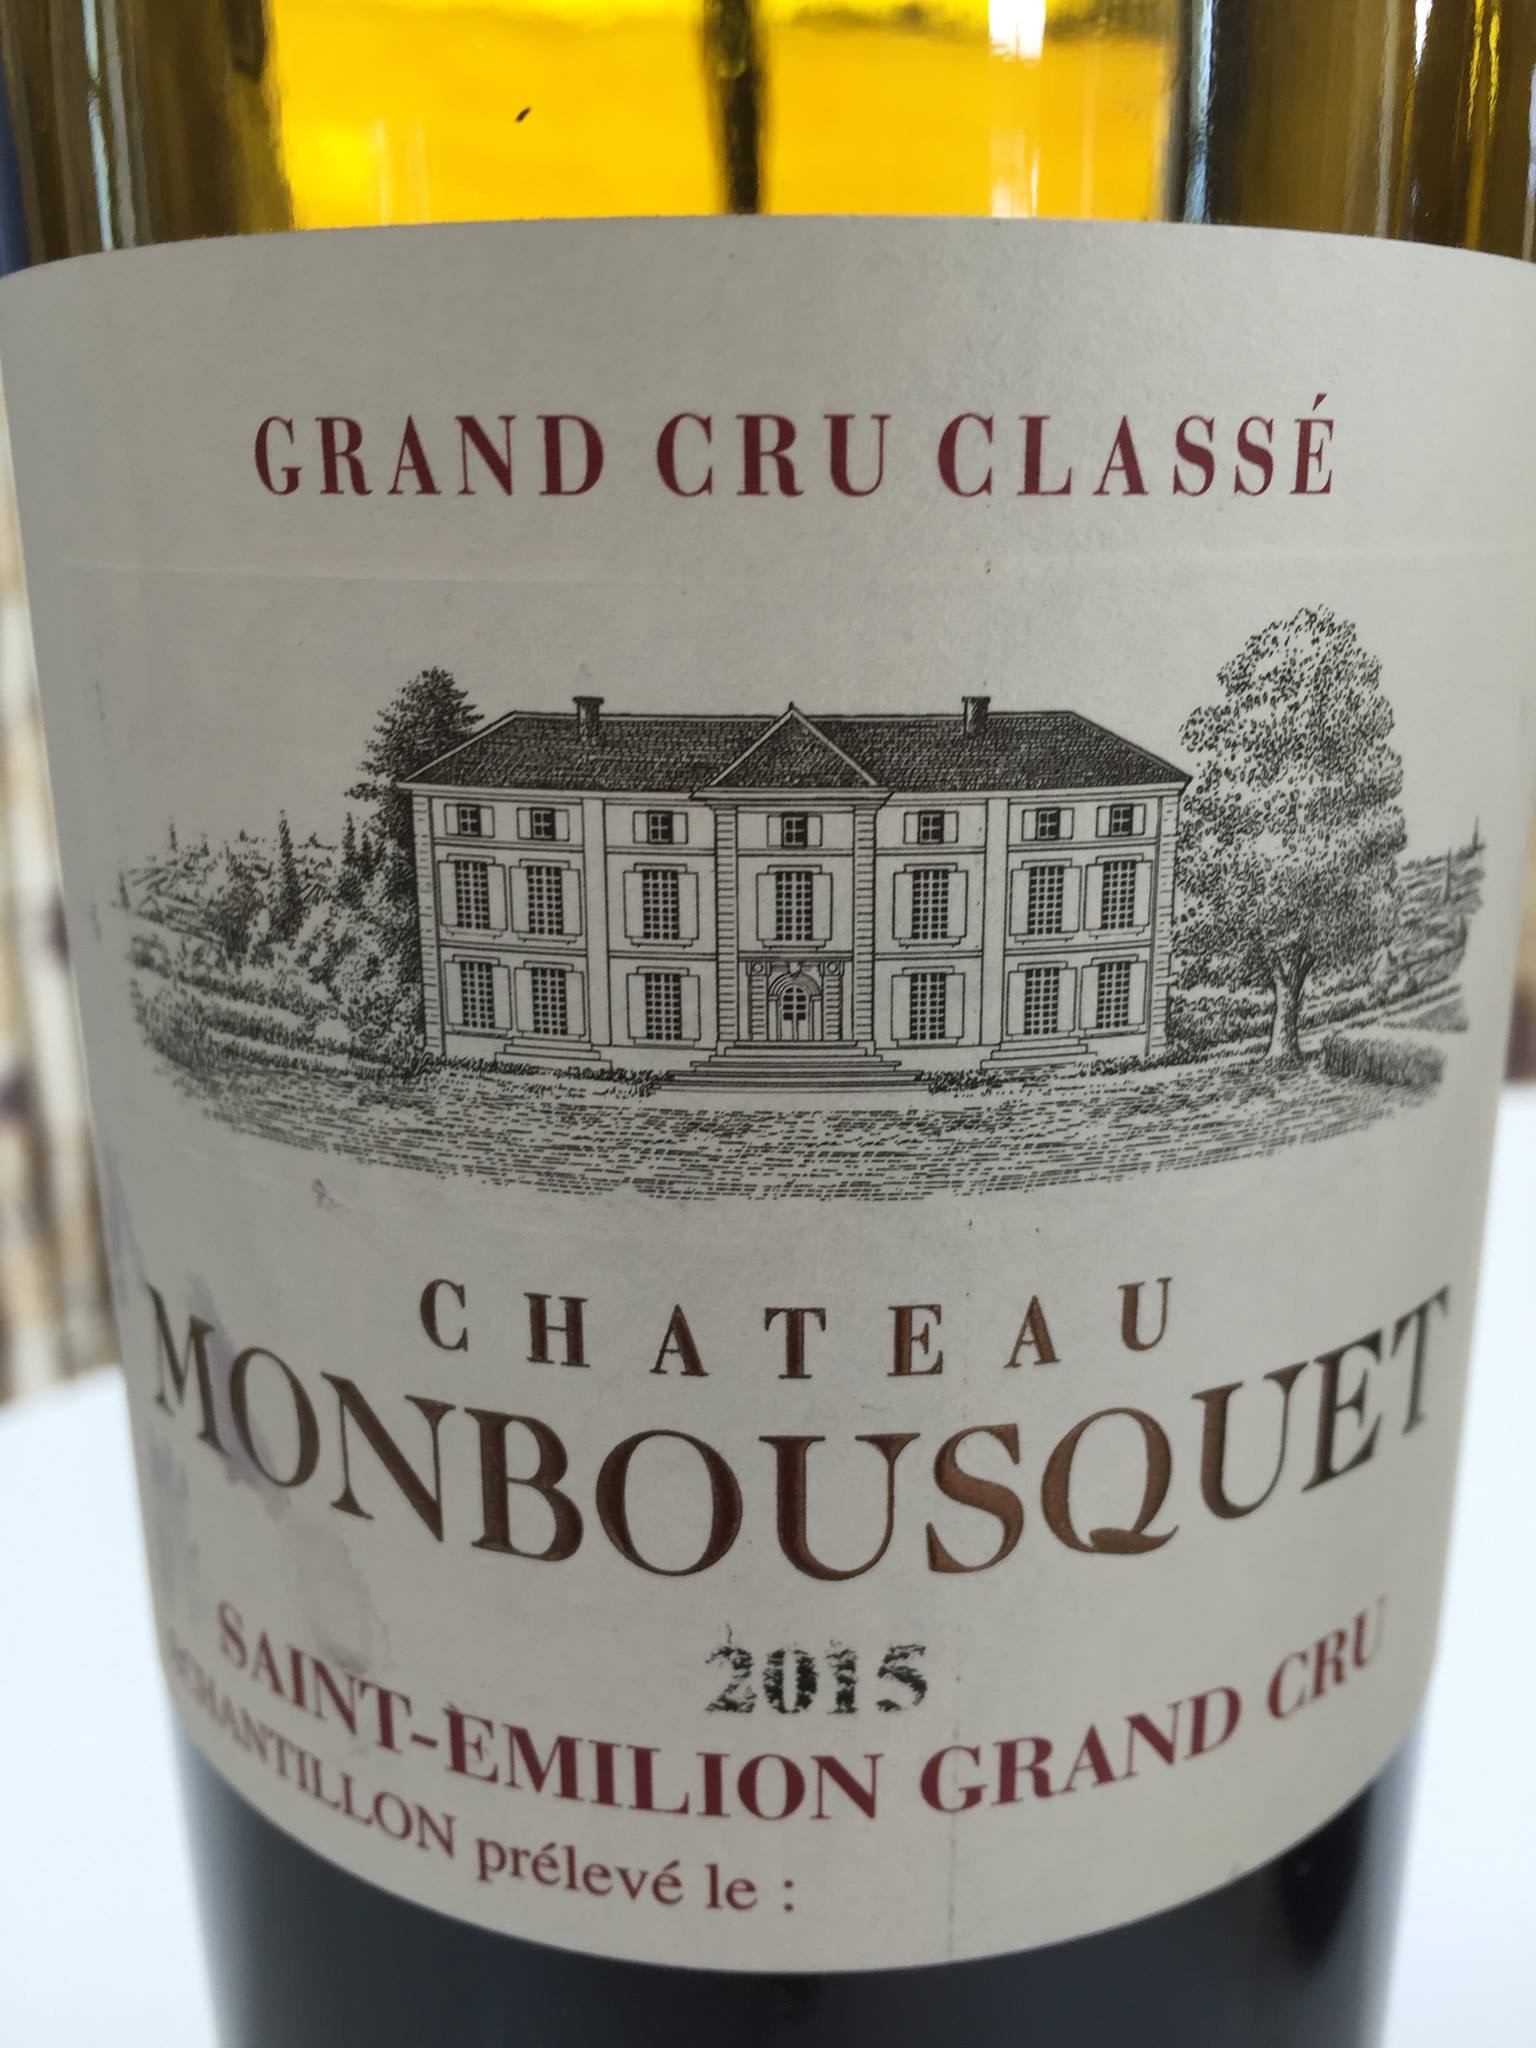 Château Monbousquet 2015 – Saint-Emilion Grand Cru Classé